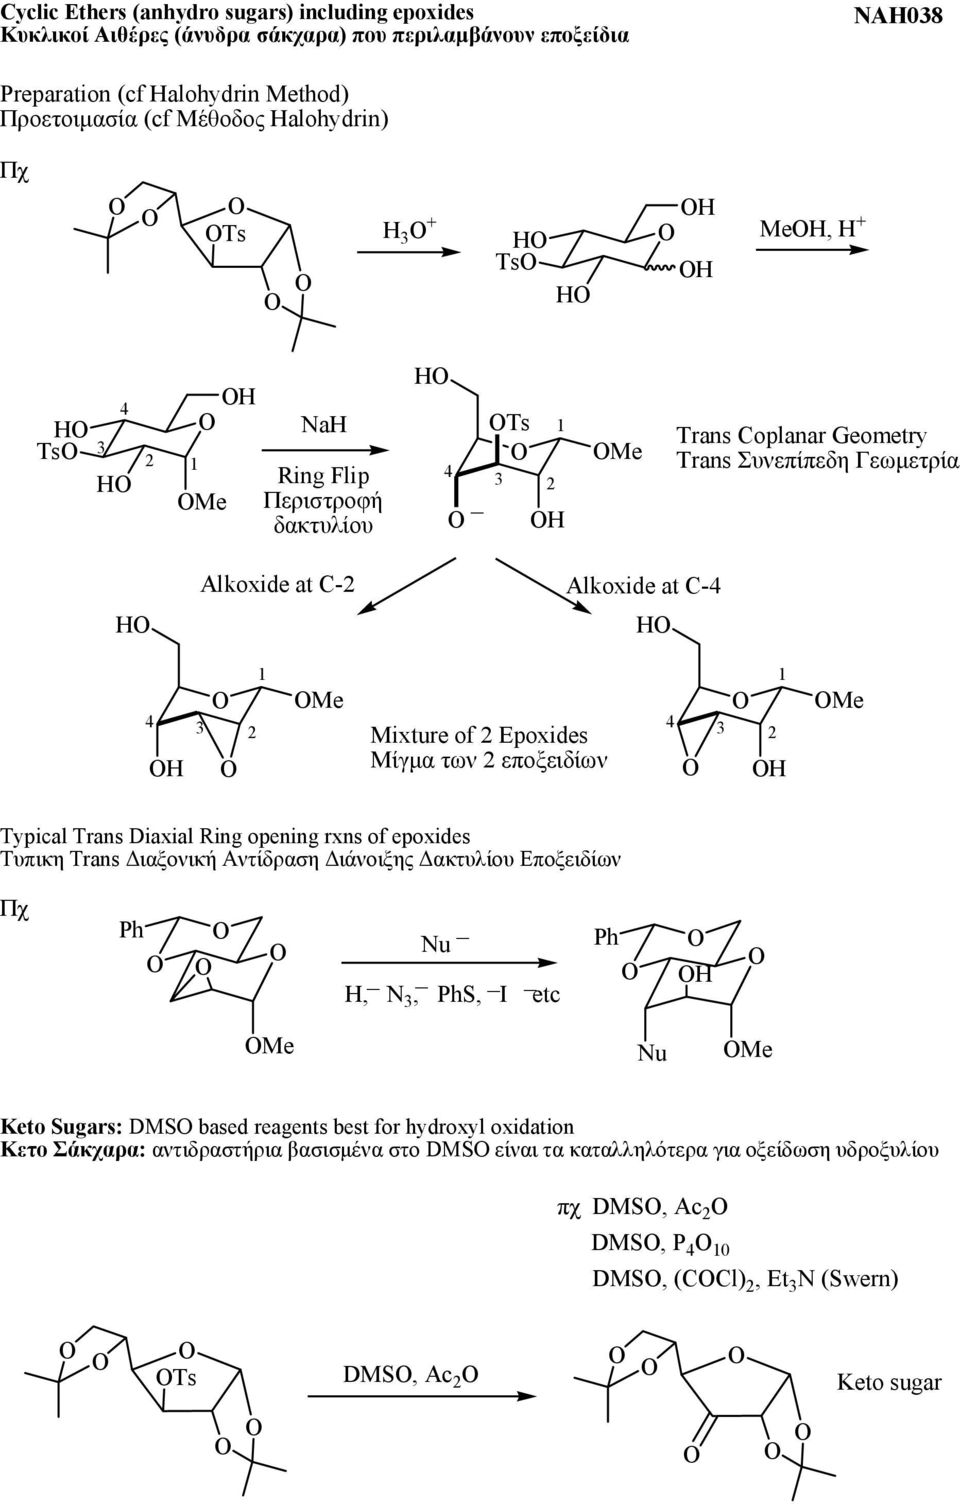 εποξειδίων 4 3 1 2 Me Typical Trans Diaxial Ring opening rxns of epoxides Τυπικη Trans Διαξονική Αντίδραση Διάνοιξης Δακτυλίου Εποξειδίων Πχ Nu _, N 3, S, I etc Me Nu Me Keto Sugars: DMS based